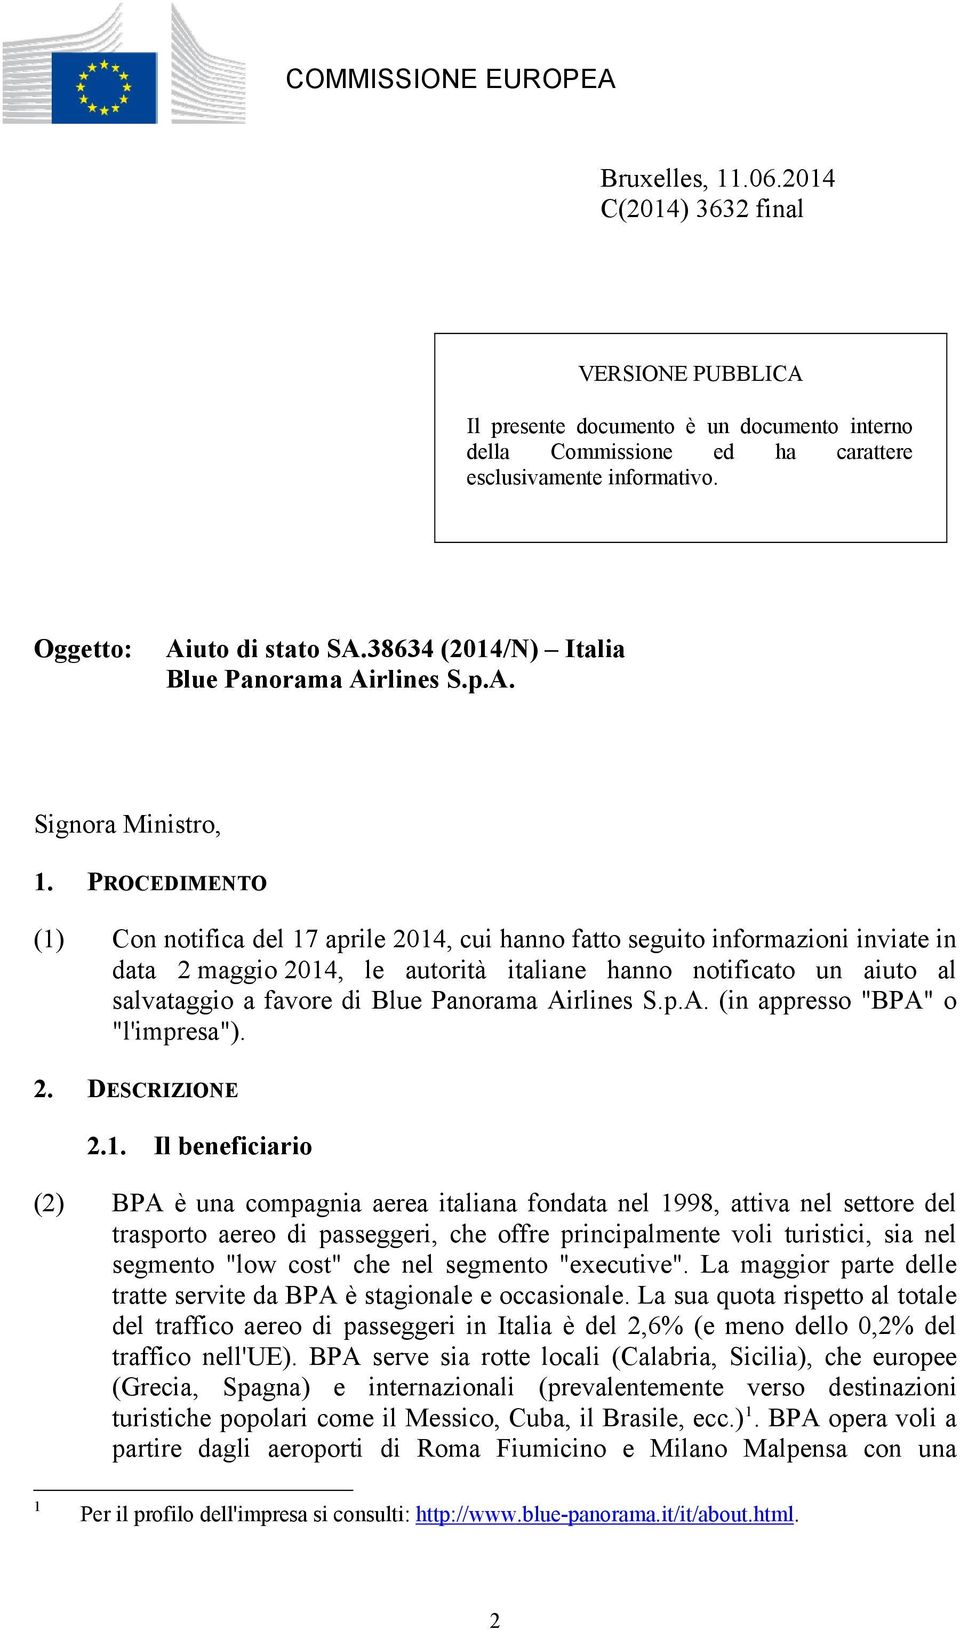 PROCEDIMENTO (1) Con notifica del 17 aprile 2014, cui hanno fatto seguito informazioni inviate in data 2 maggio 2014, le autorità italiane hanno notificato un aiuto al salvataggio a favore di Blue